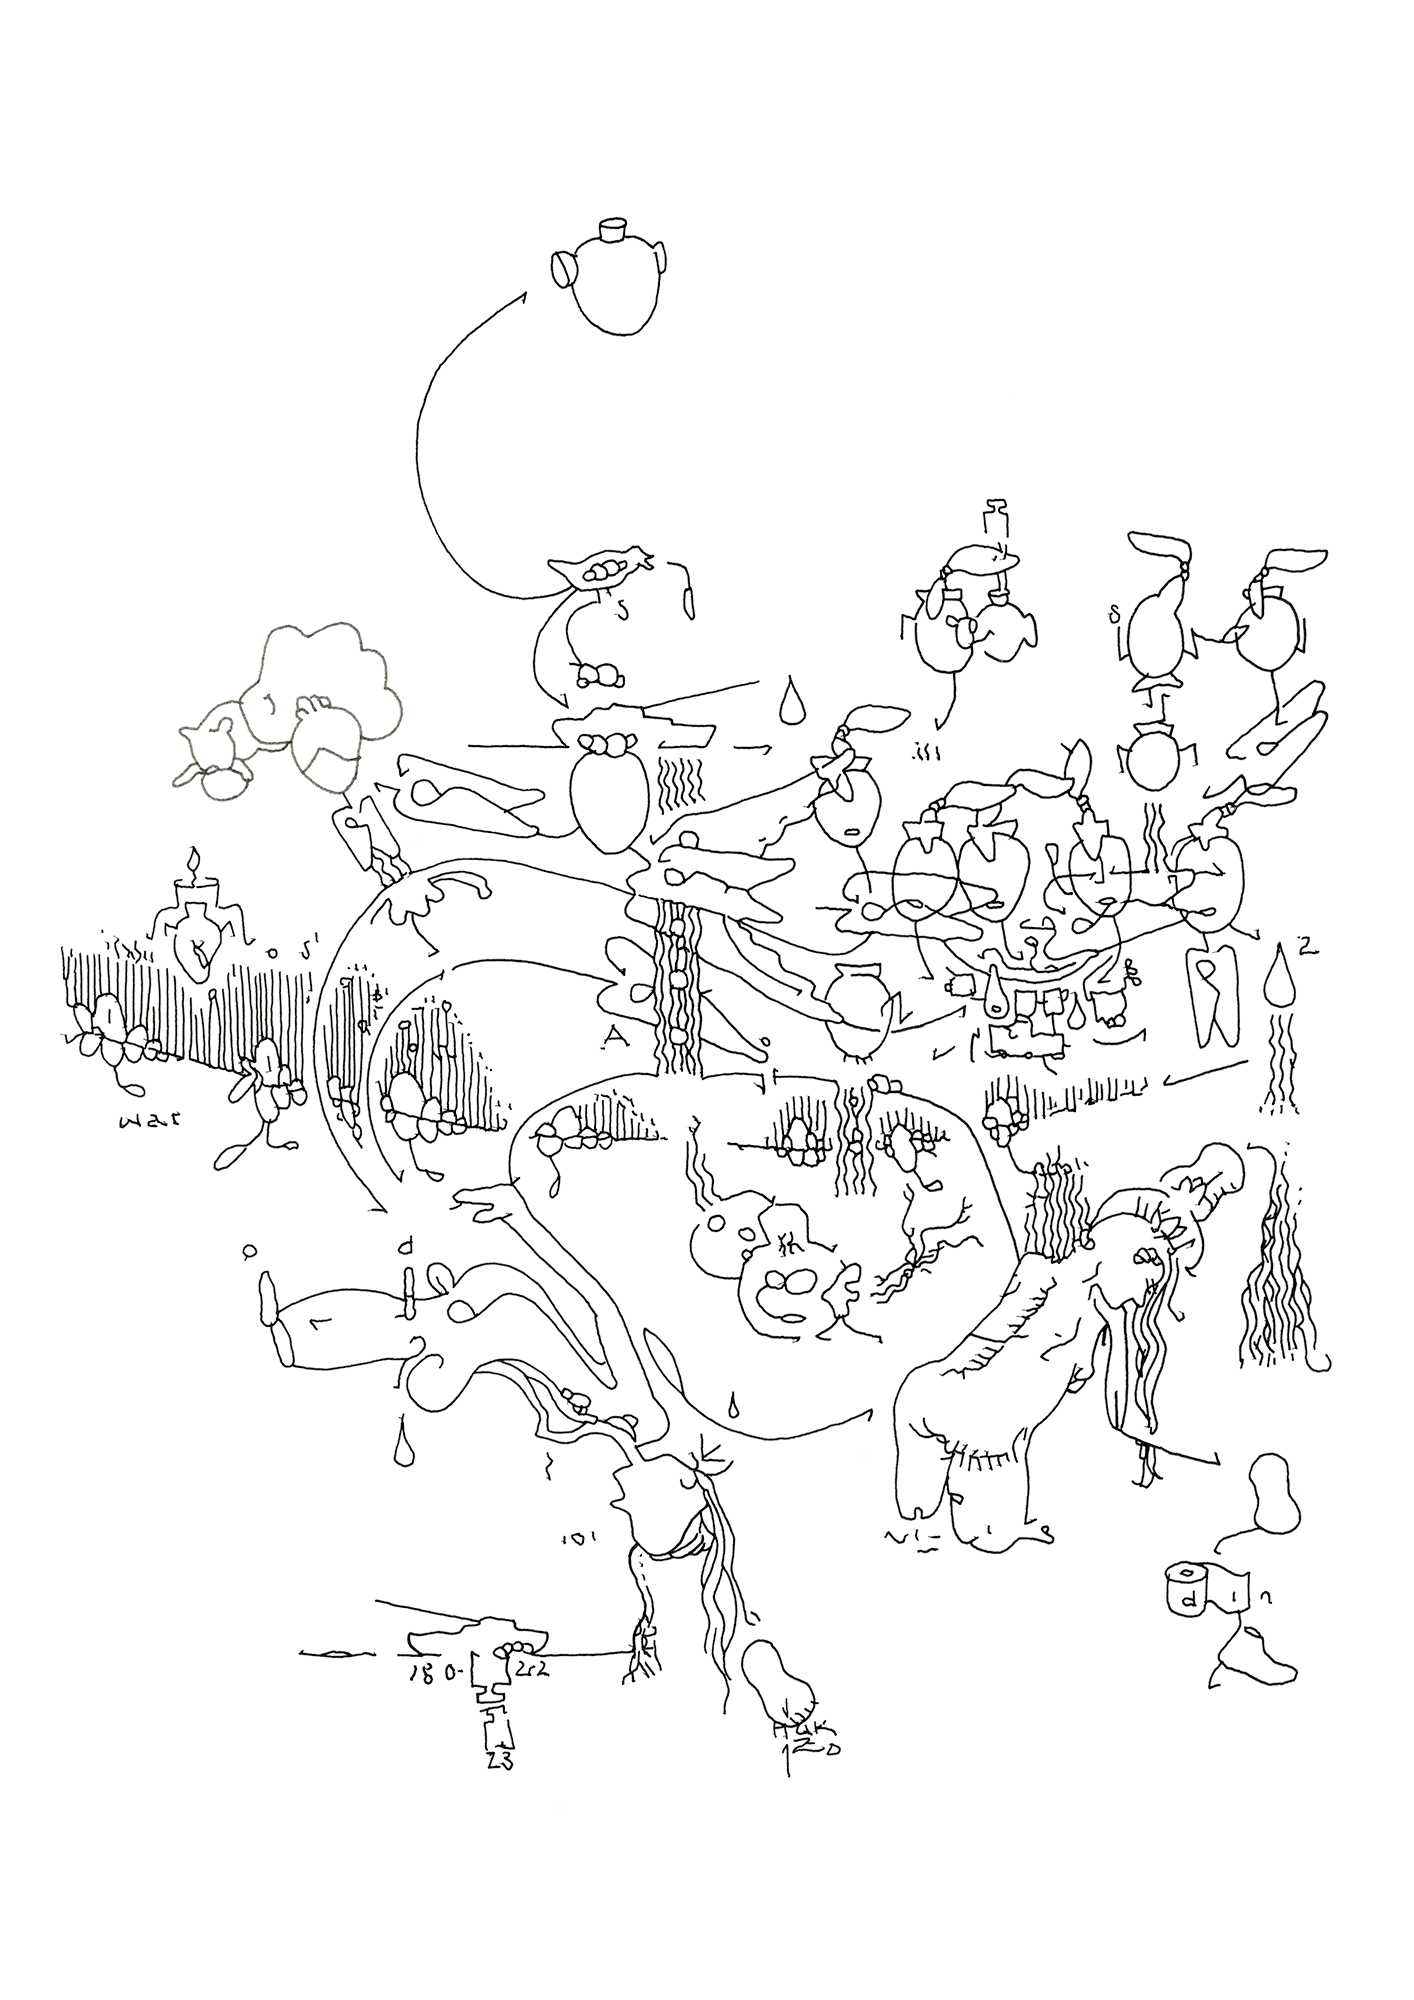 Hannes Kater: Tageszeichnung (Zeichnung/drawing) vom 07.03.2023 (1414 x 2000 Pixel)